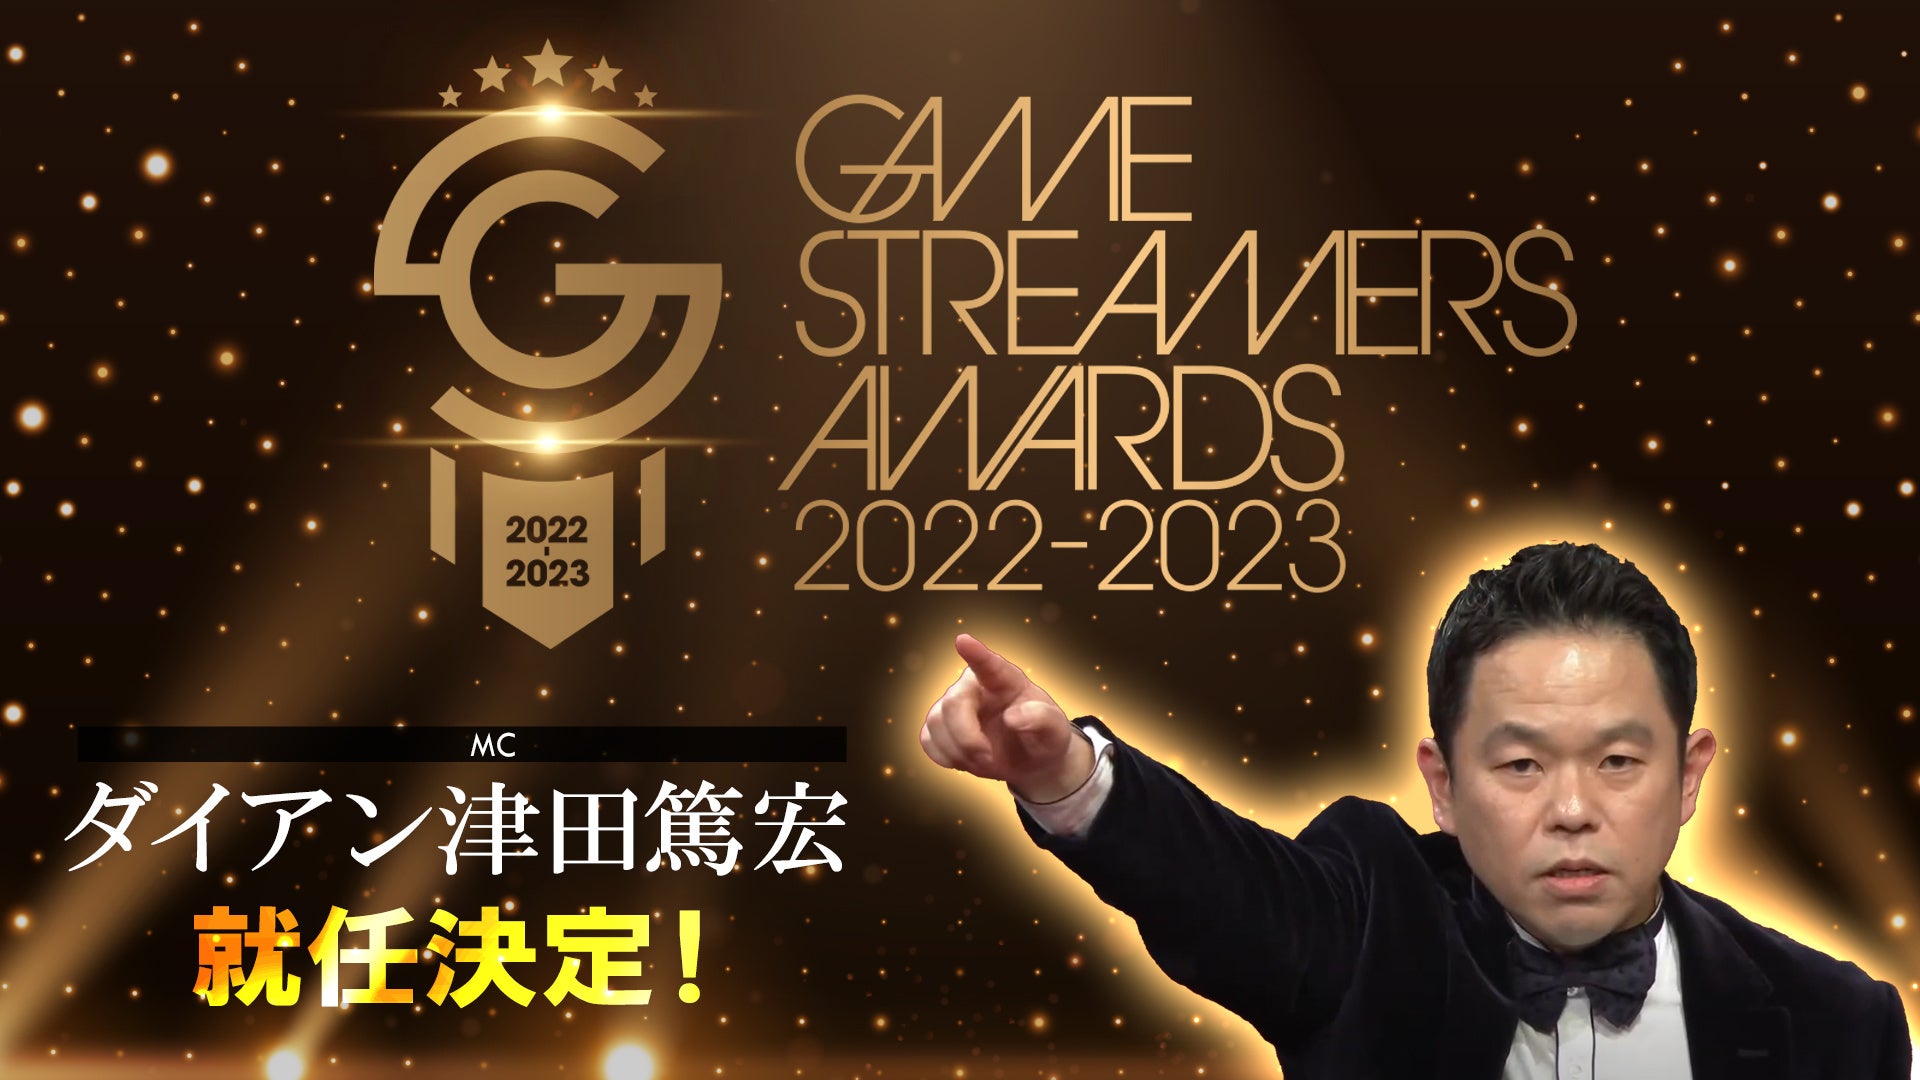 今、最も旬で活躍しているストリーマーを表彰し称える祭典『GAME STREAMERS AWARDS 2022-2023』開催についてのお知らせのサブ画像2